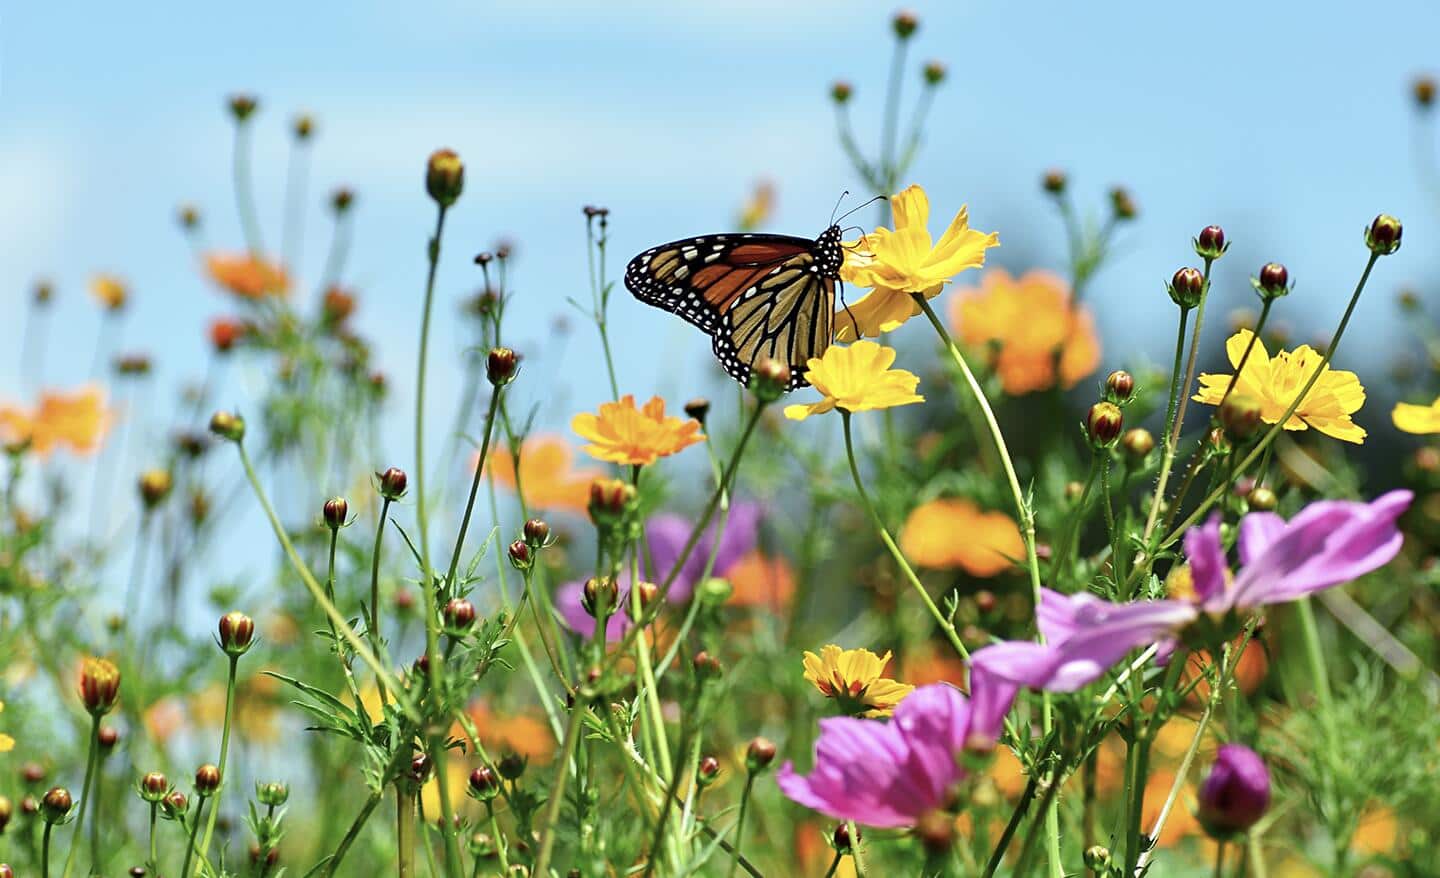 Monarch butterfly on a flower stem in a sunny meadow garden